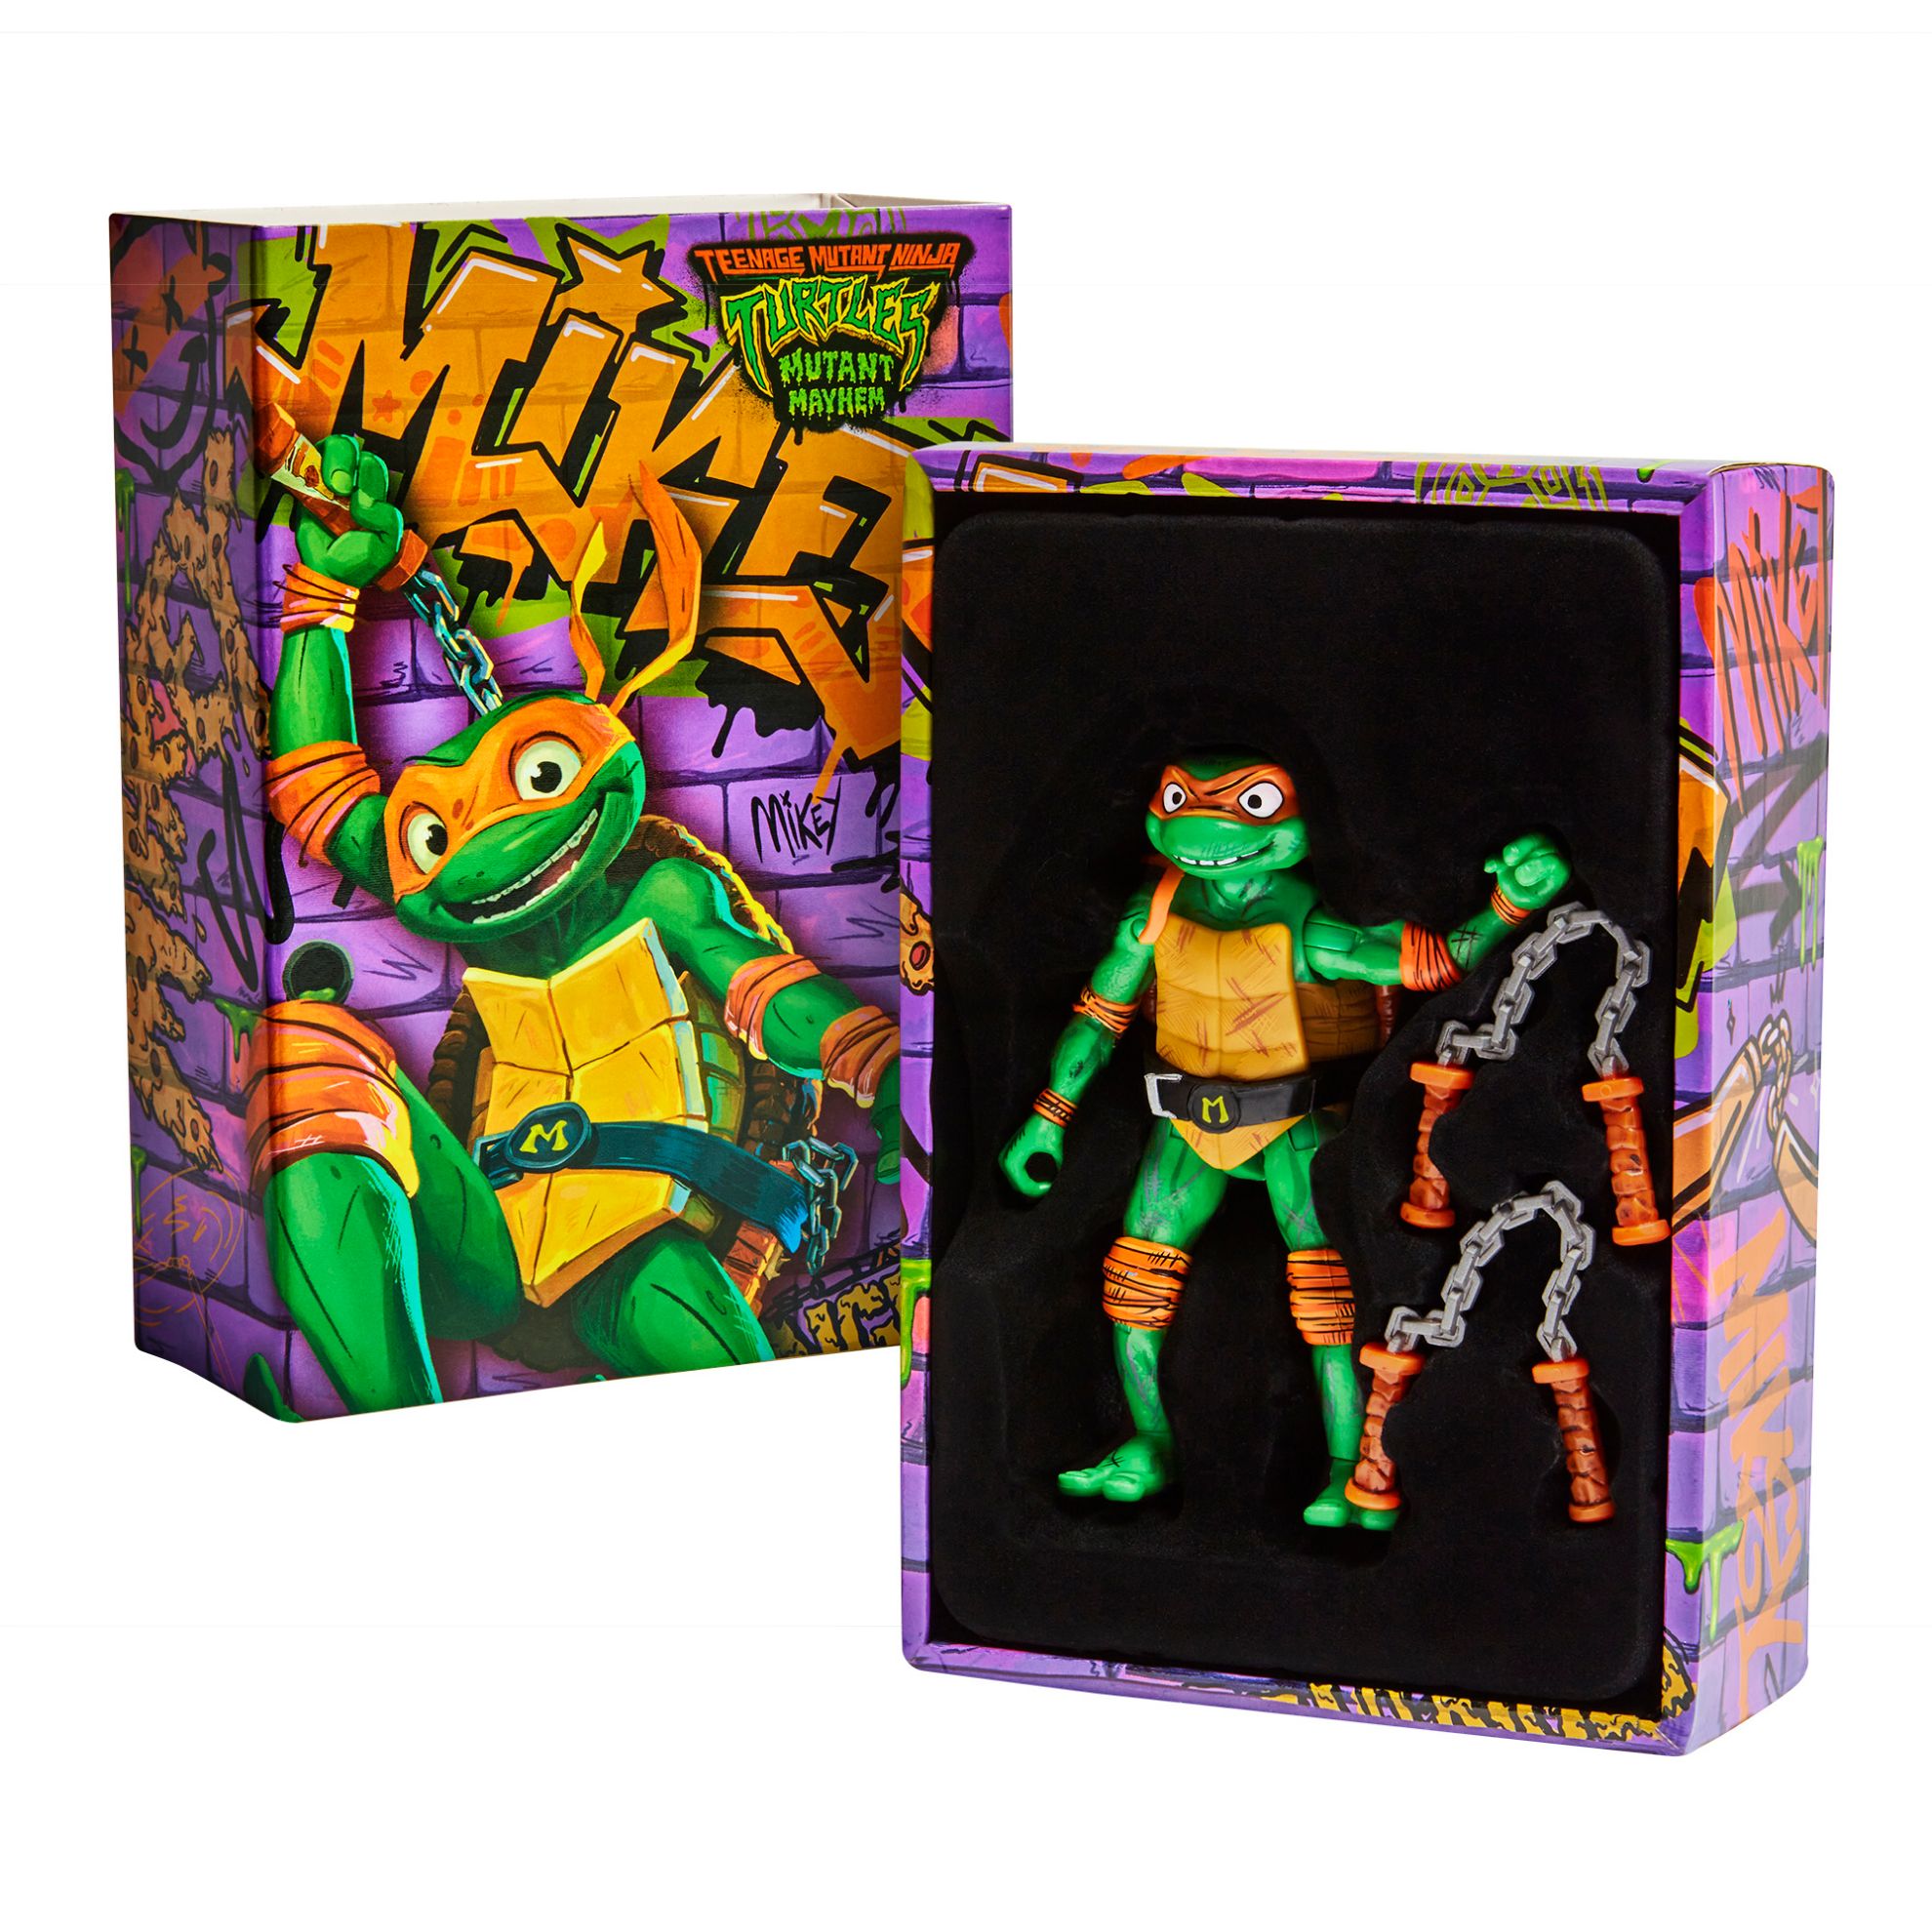 Teenage Mutant Ninja Turtles Mutant Mayhem - MichaelangeloToys